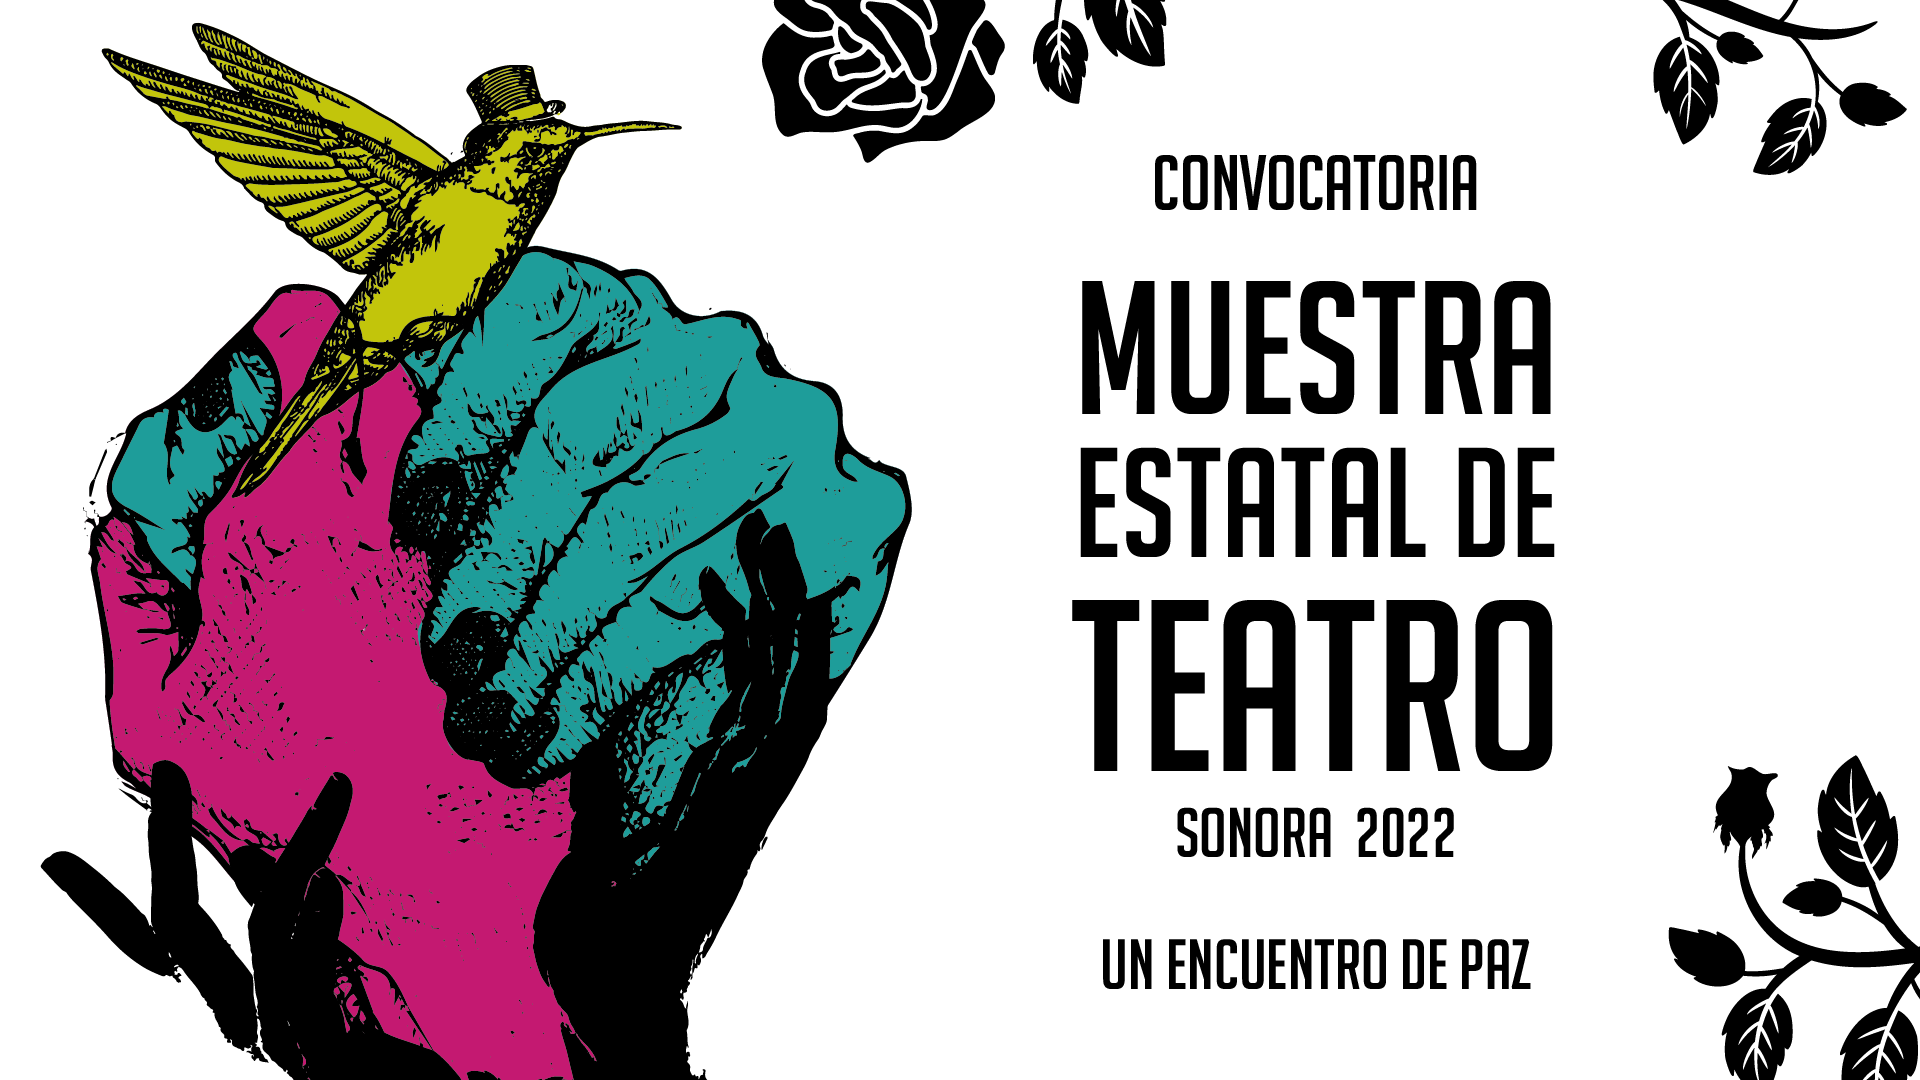 MUESTRA ESTATAL DE TEATRO, SONORA, 2022. Un encuentro de paz